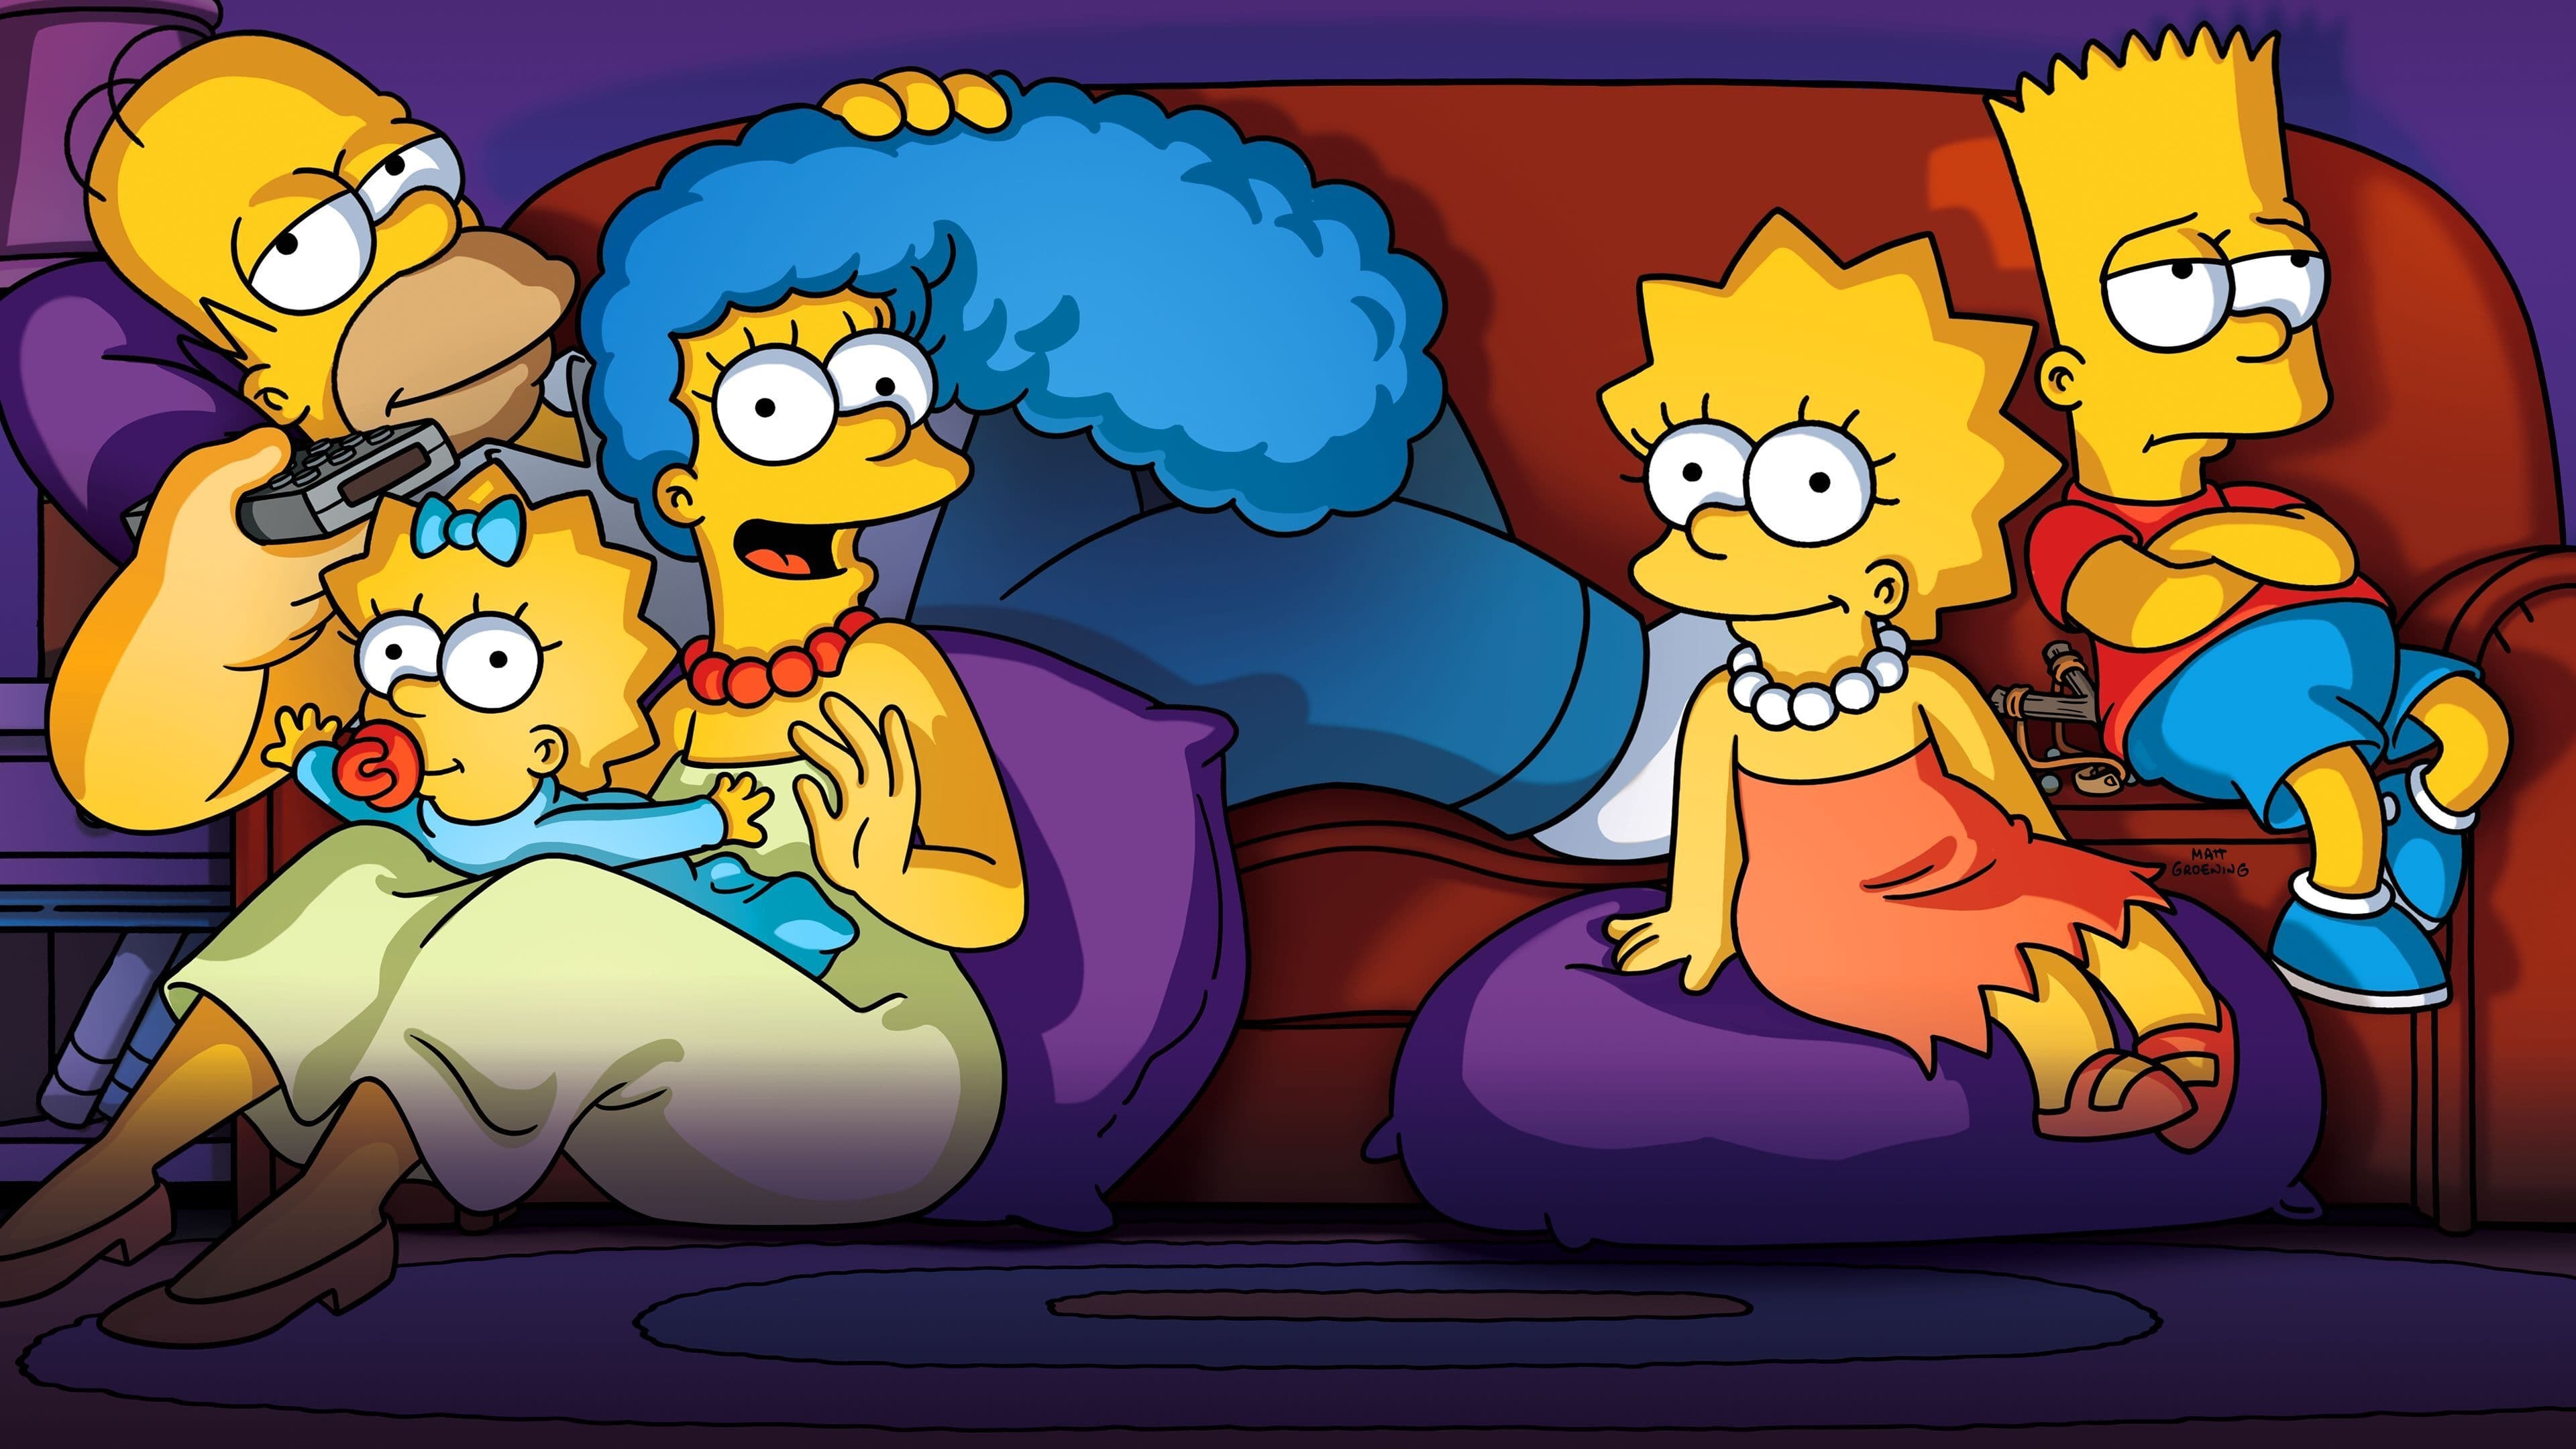 เดอะซิมป์สันส์ The Simpsons ออนไลน์โดยสมบูรณ์ในปี 1989